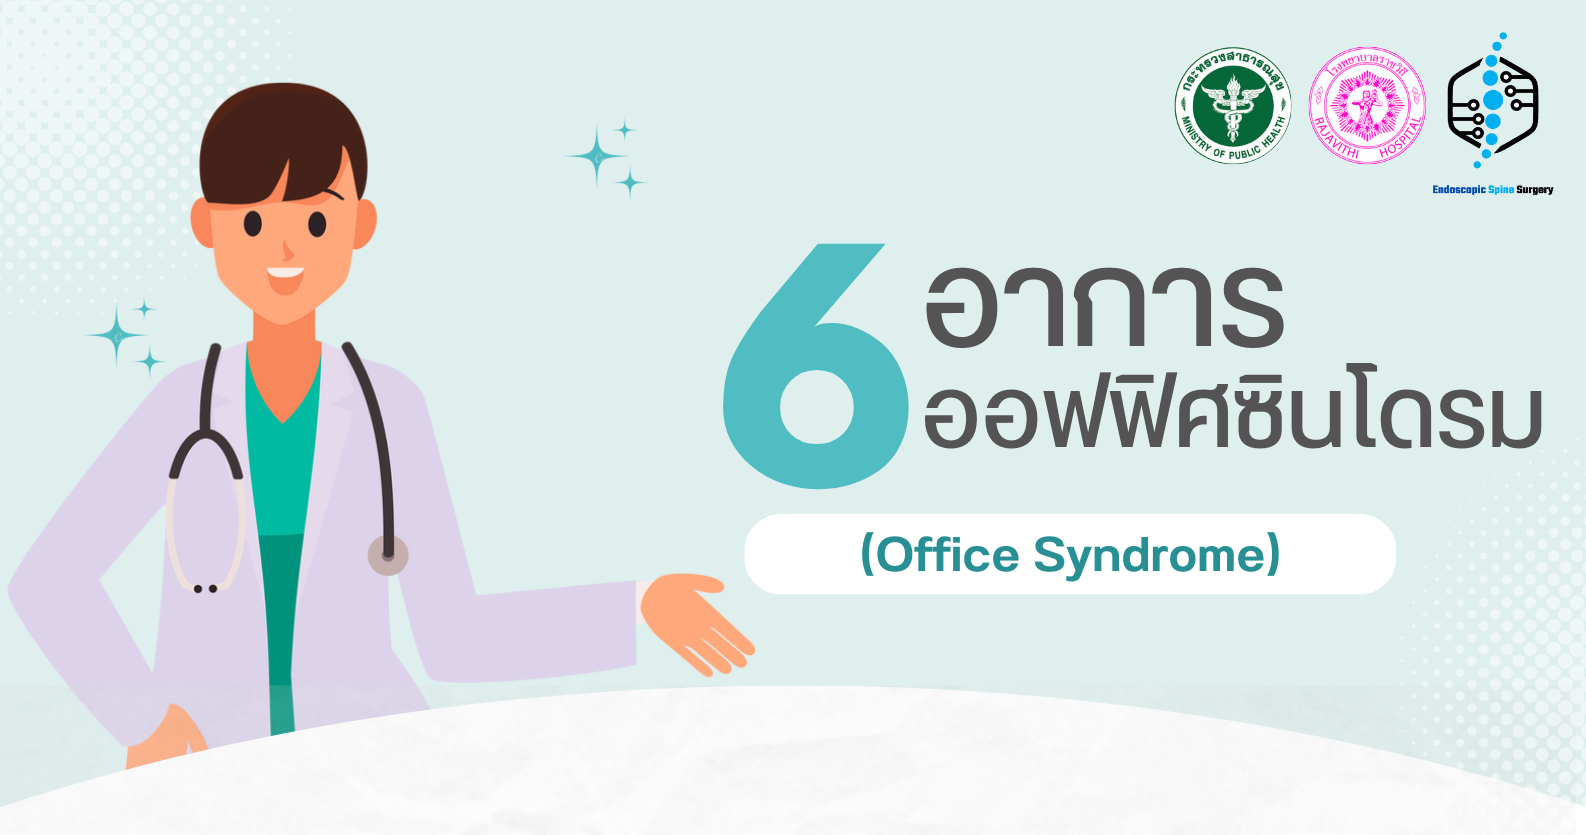 6 อาการออฟฟิศซินโดรม (Office Syndrome)